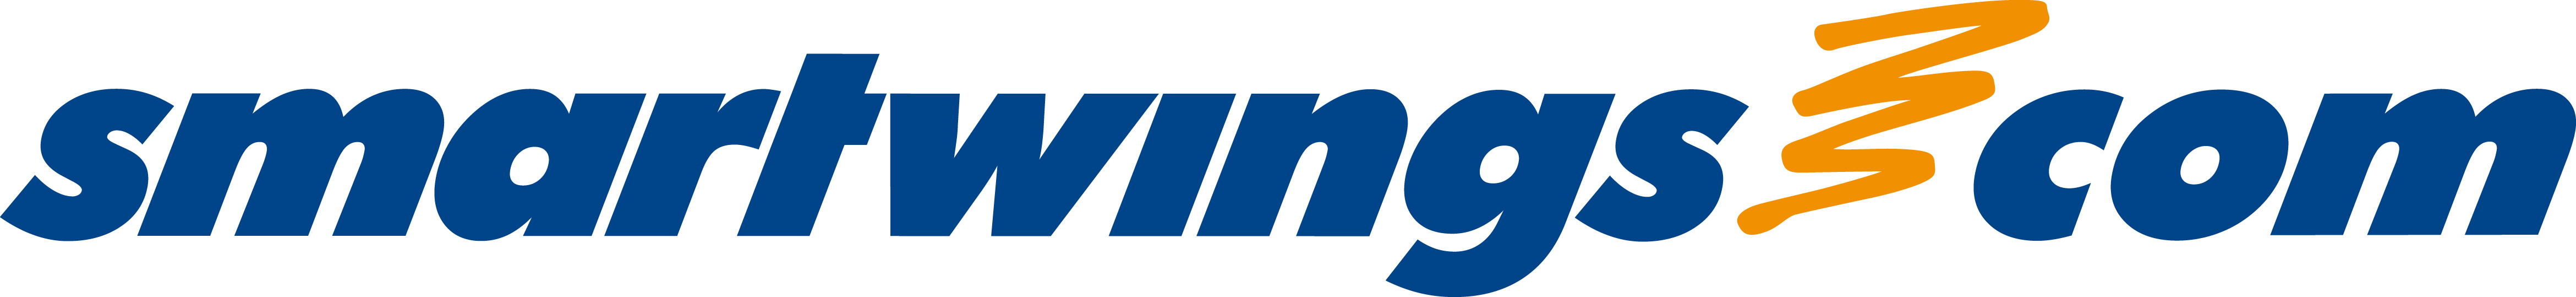 smartwings_logo.jpg